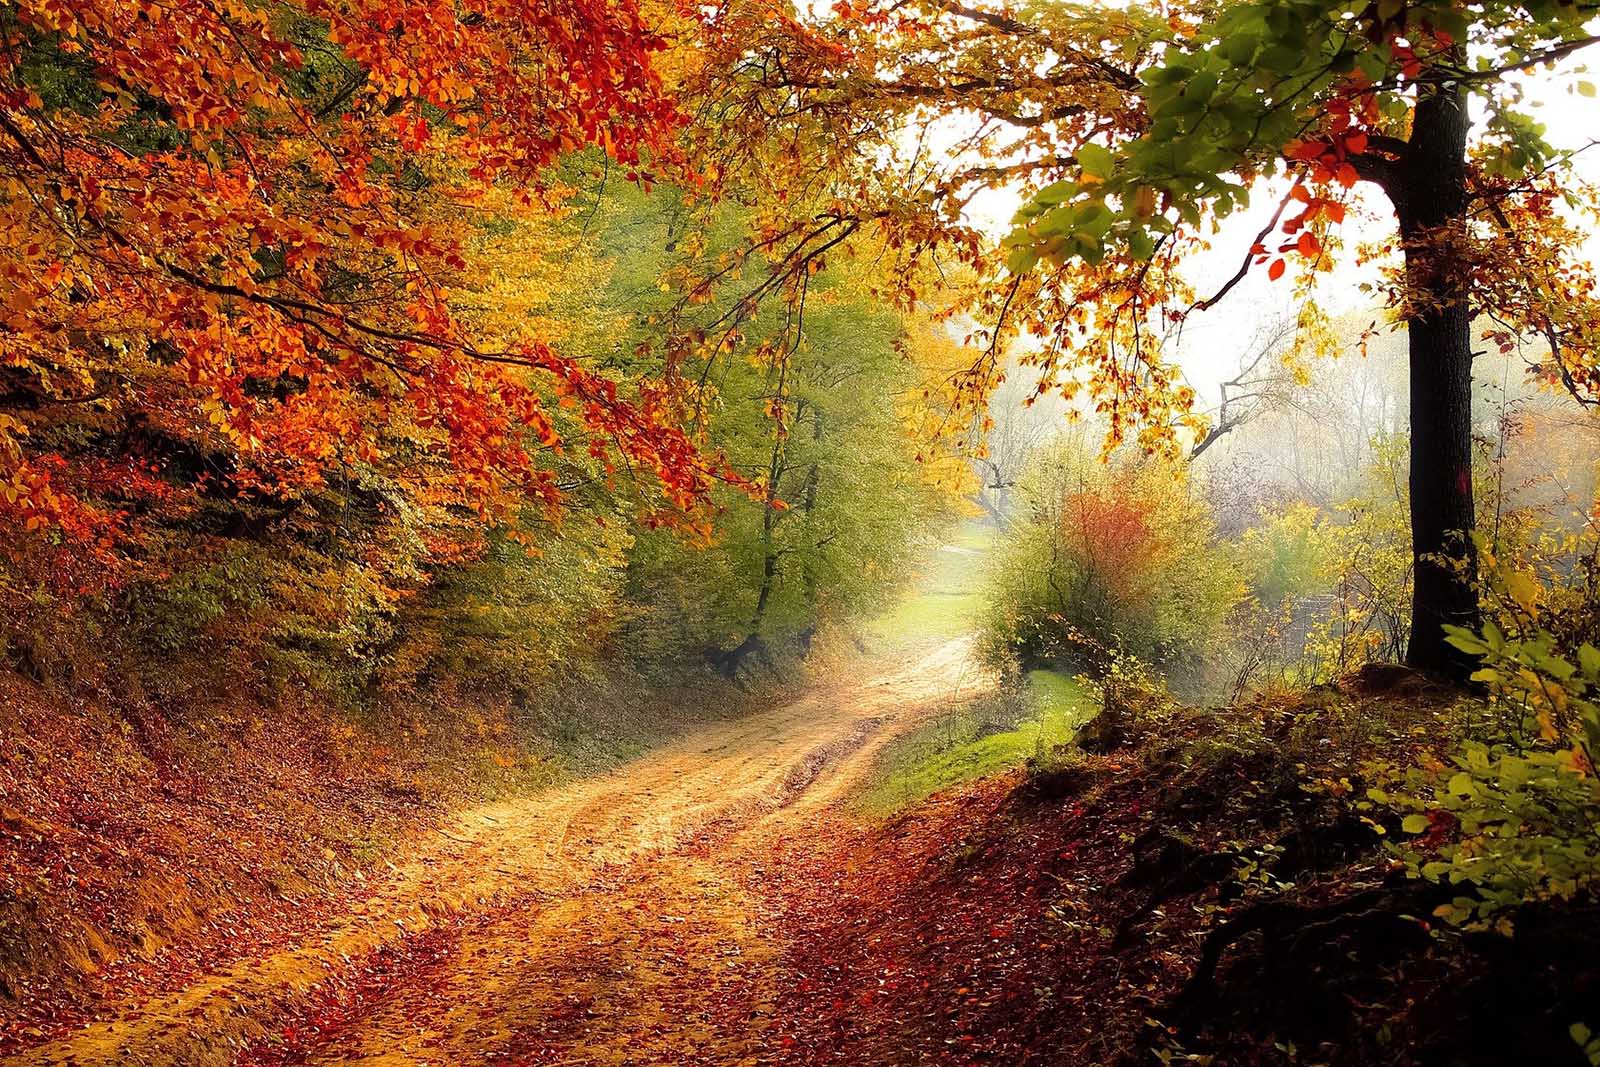 arboles-otoño-pixabay.jpg 